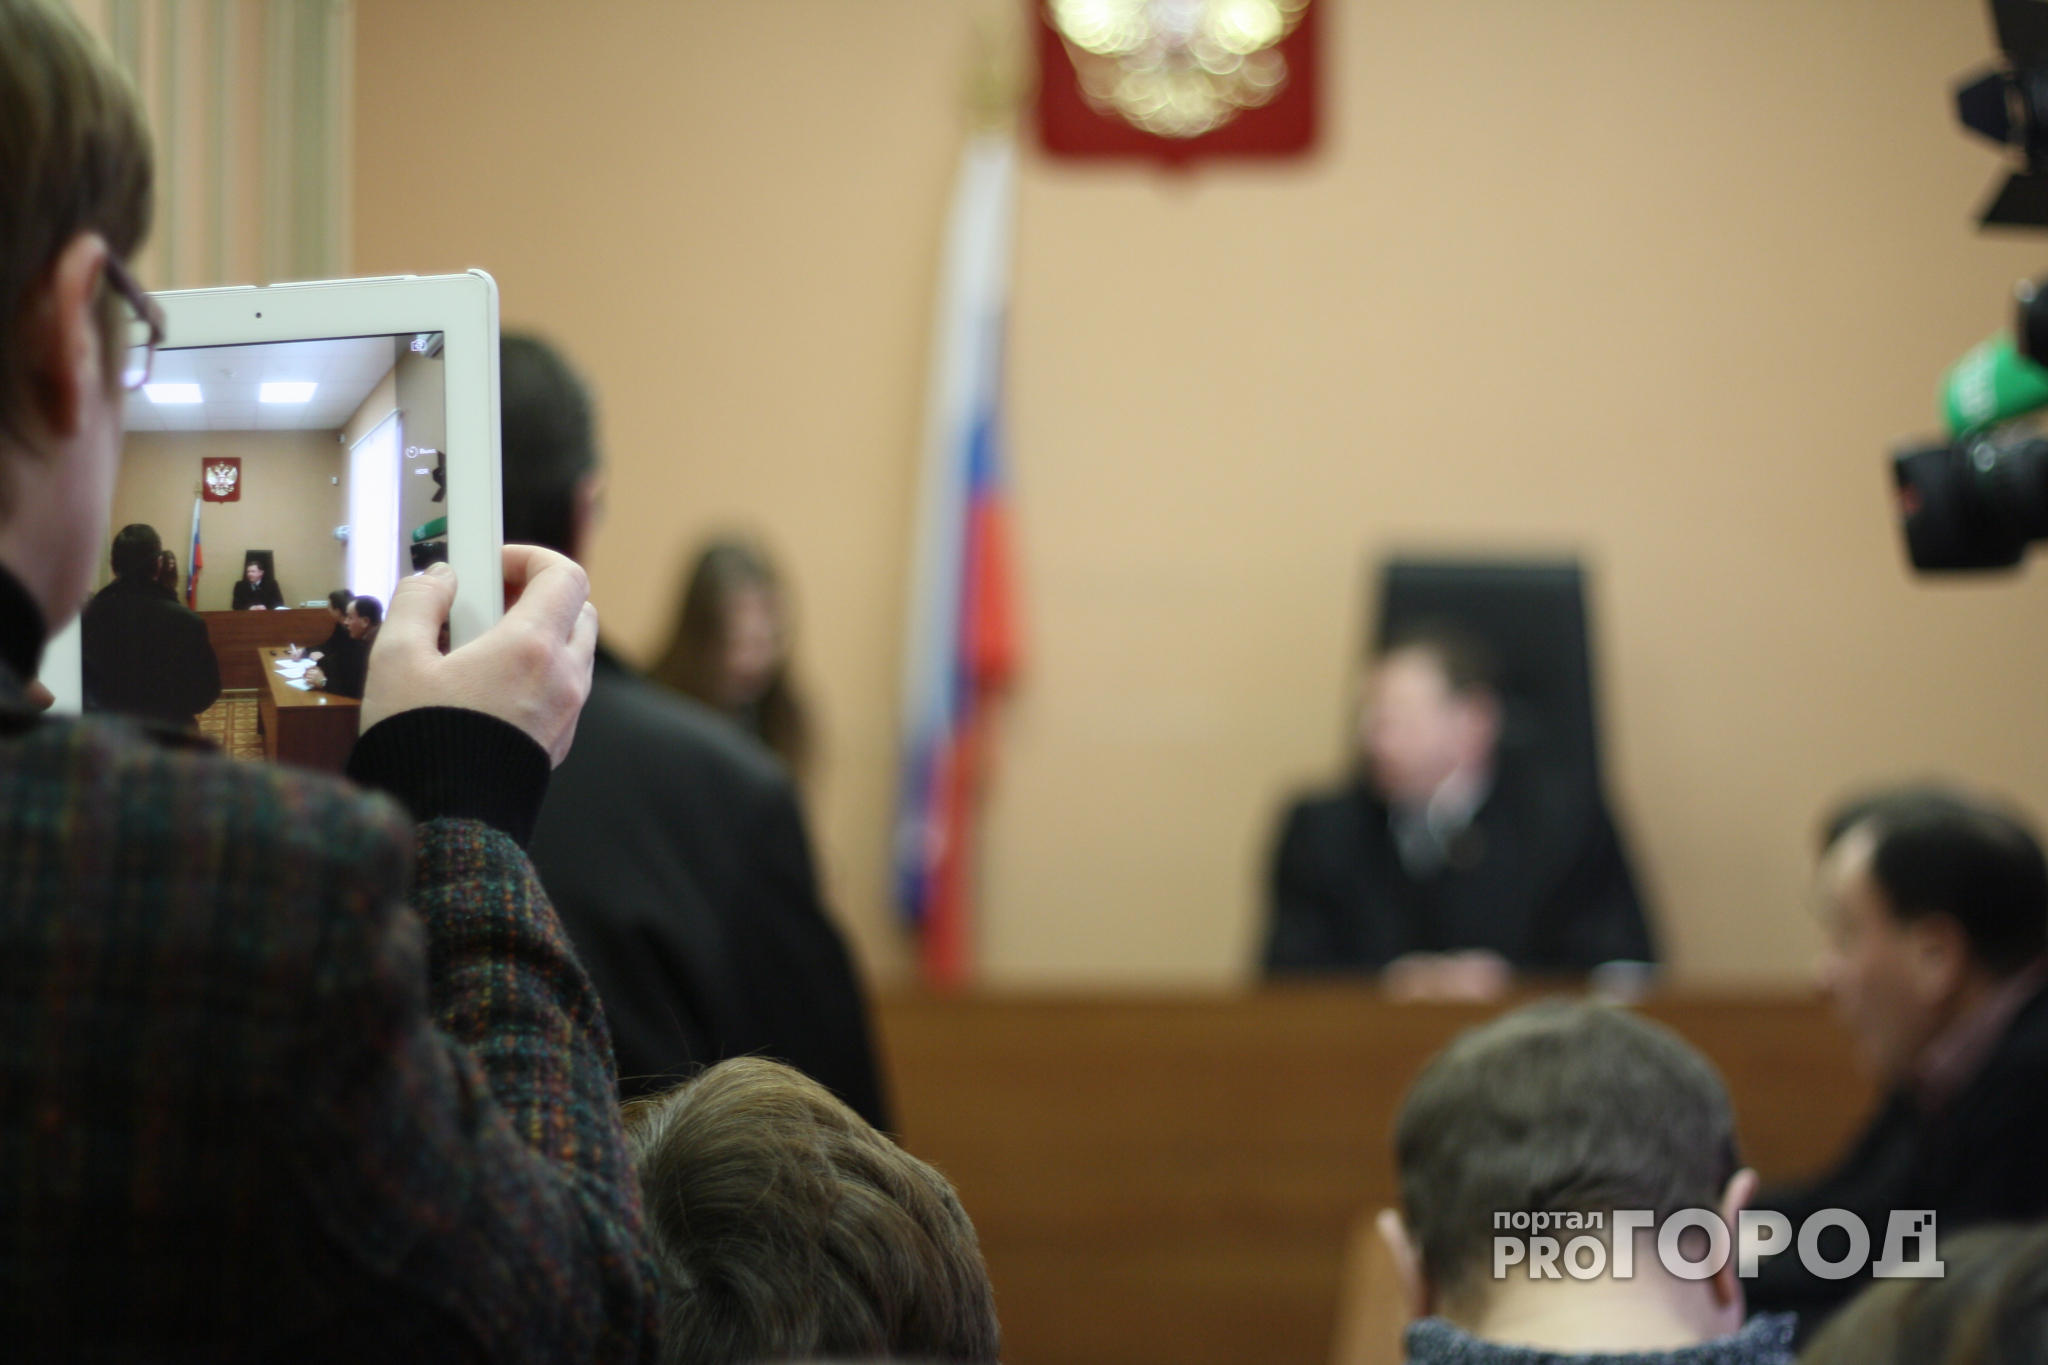 Нижегородского депутата требуют отстранить от должности через суд